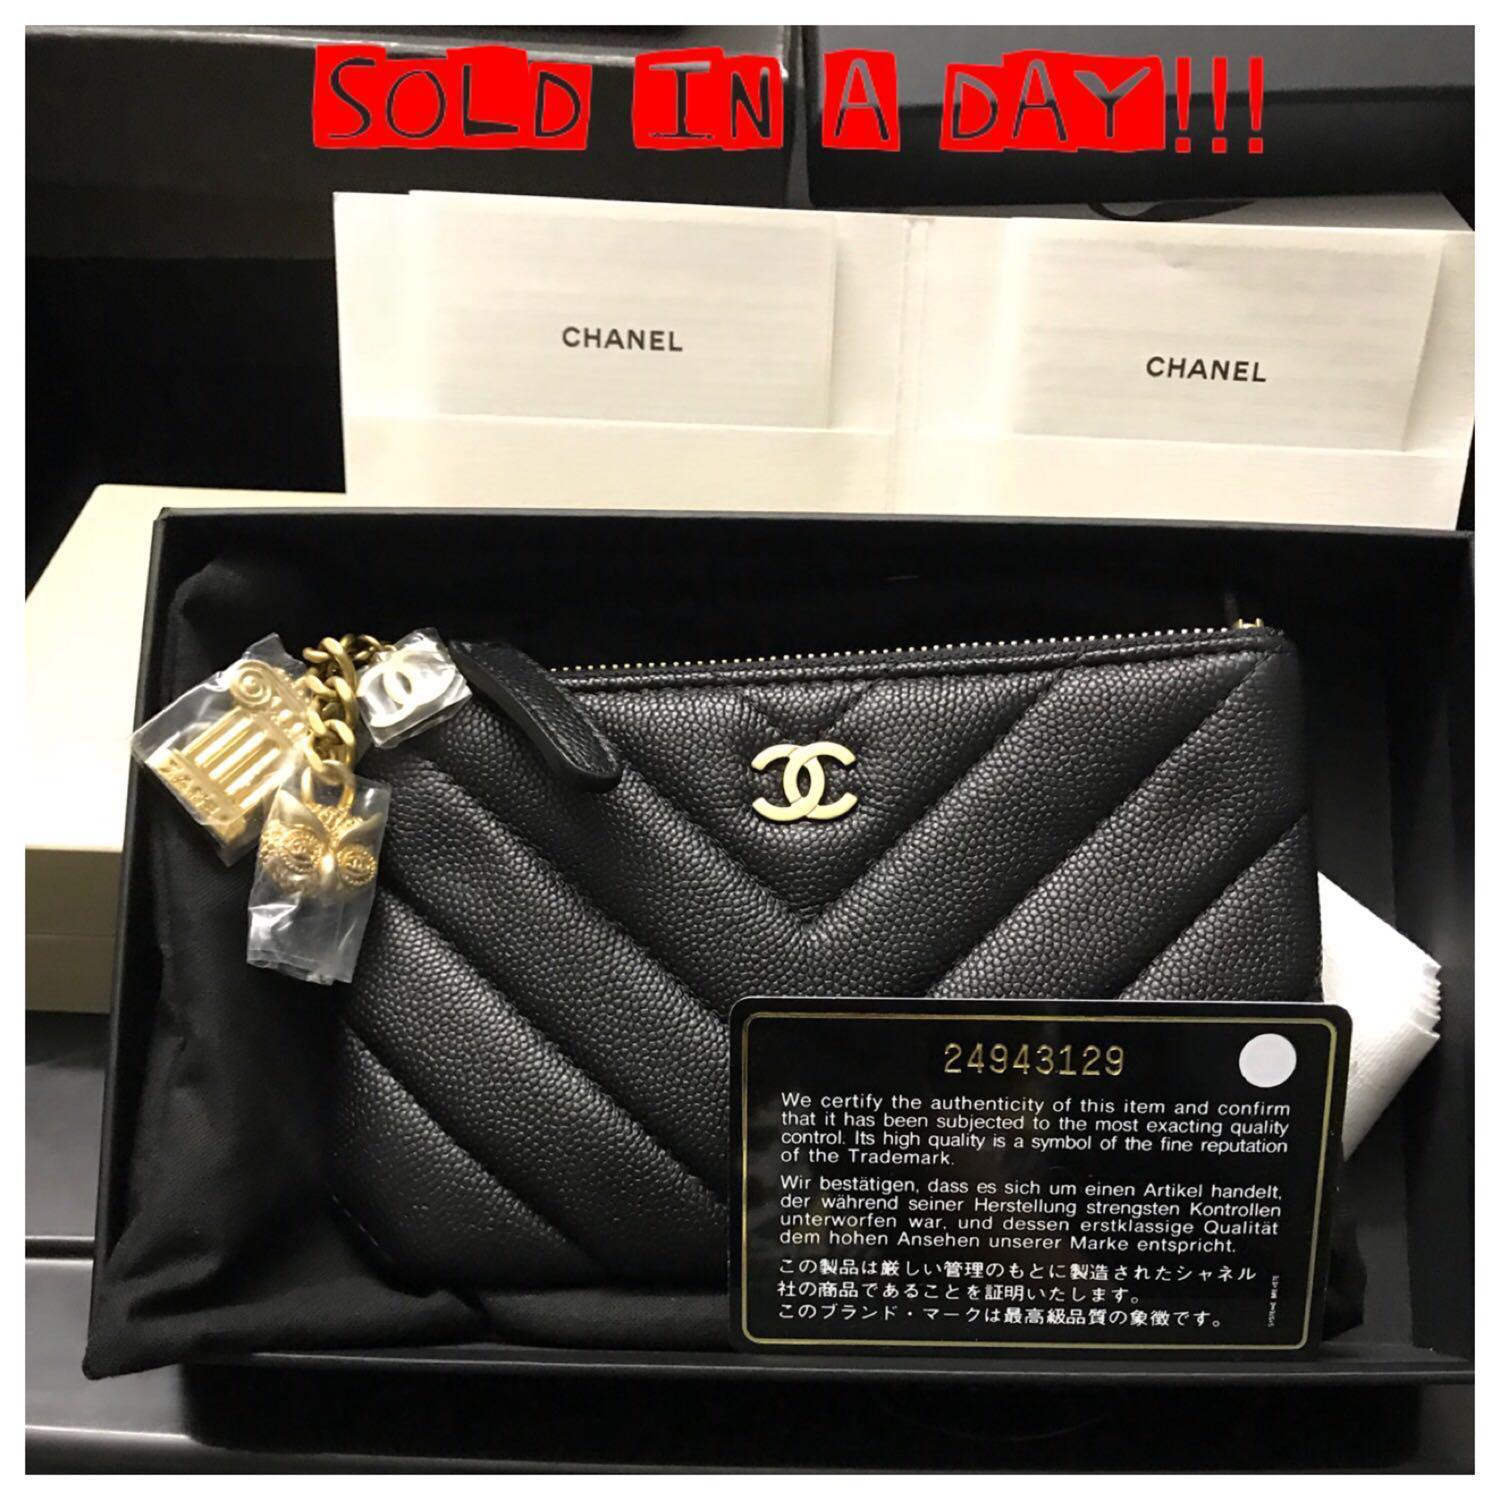 Battle of the Pouches: Chanel Mini O-Case Vs. Louis Vuitton Mini Pochette 